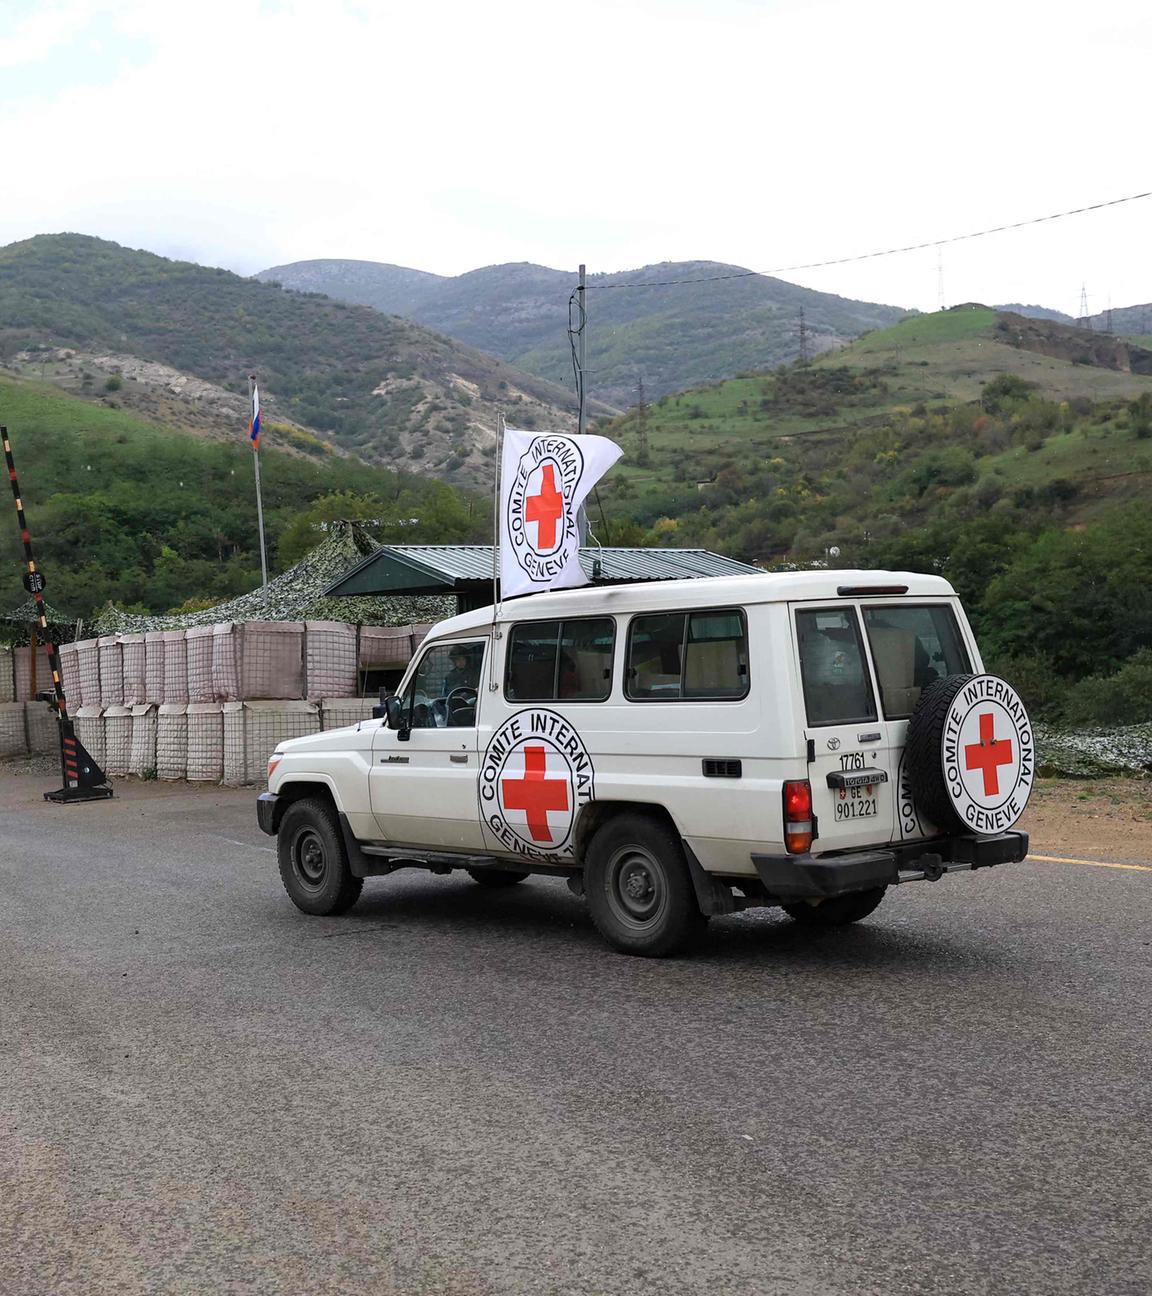 Roter Kreuz (ICRC), Symbolbild